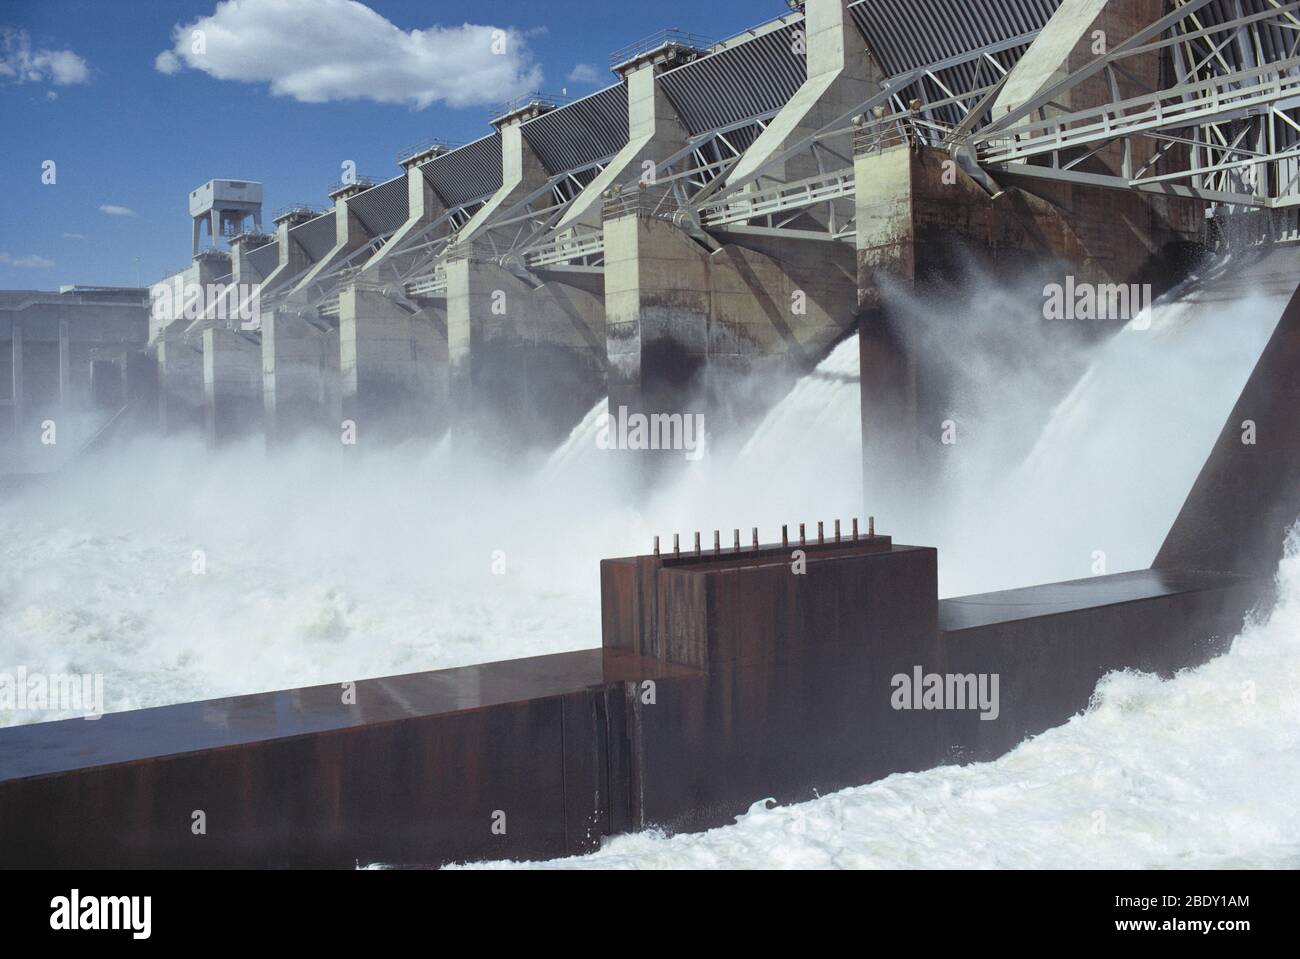 Ice Harbor Dam, Washington Stock Photo